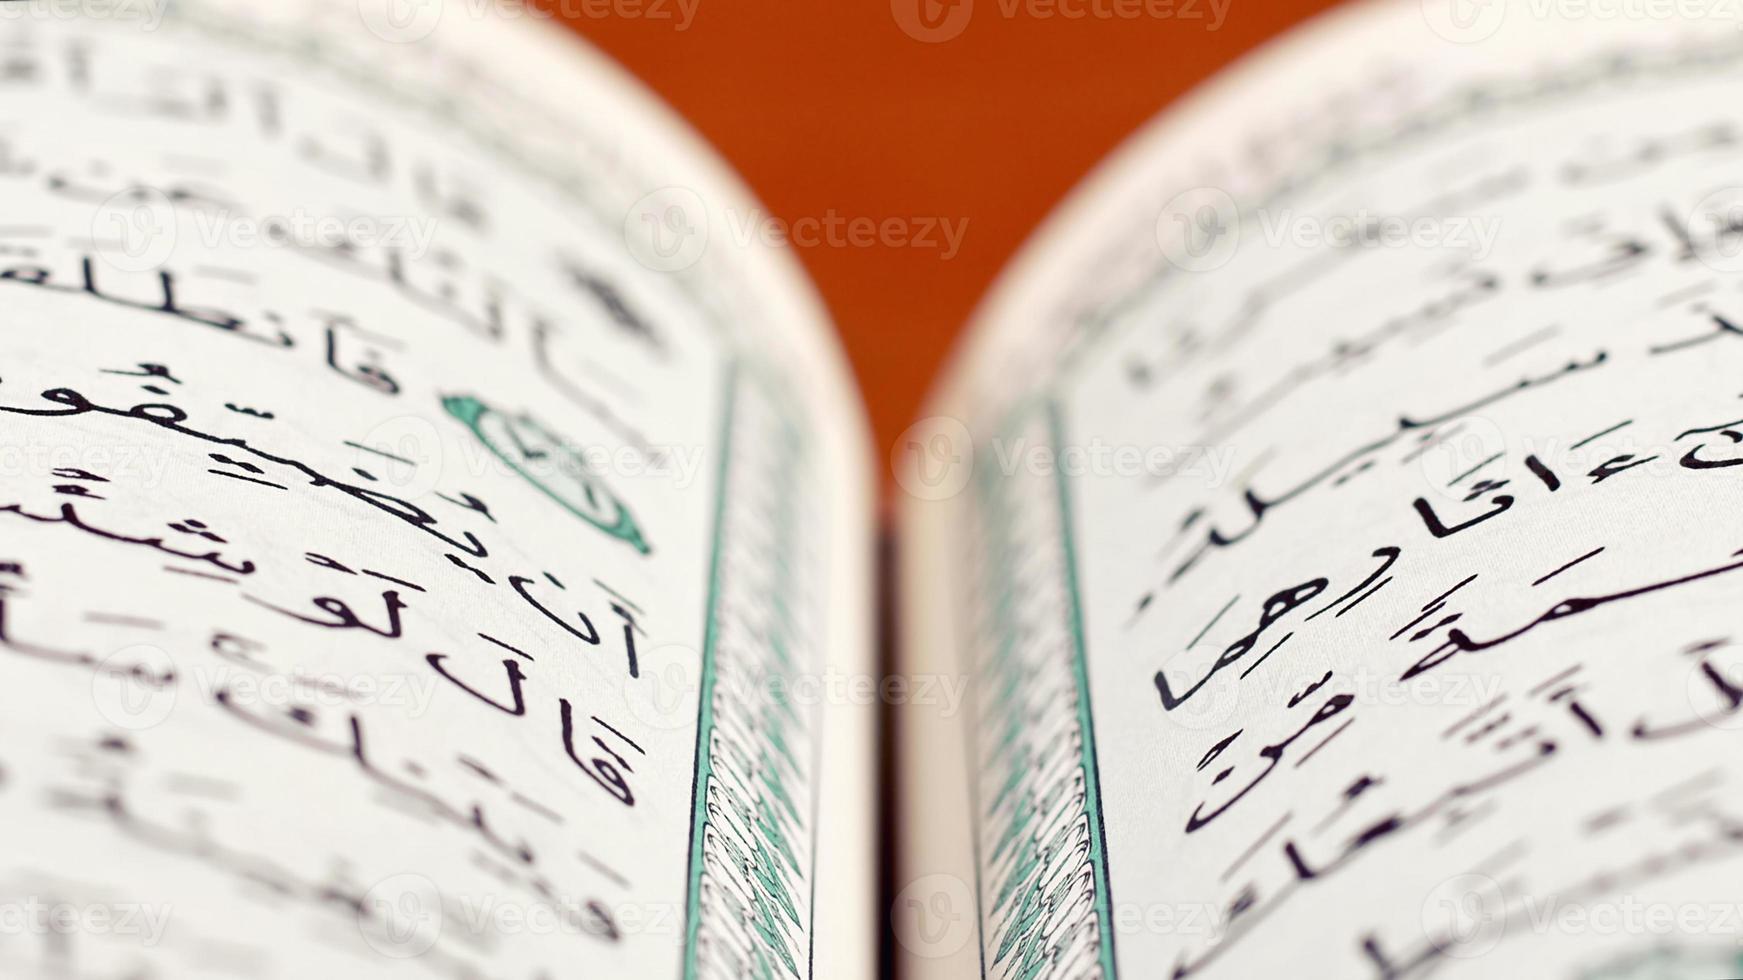 quran de helig bok av muslim religion foto